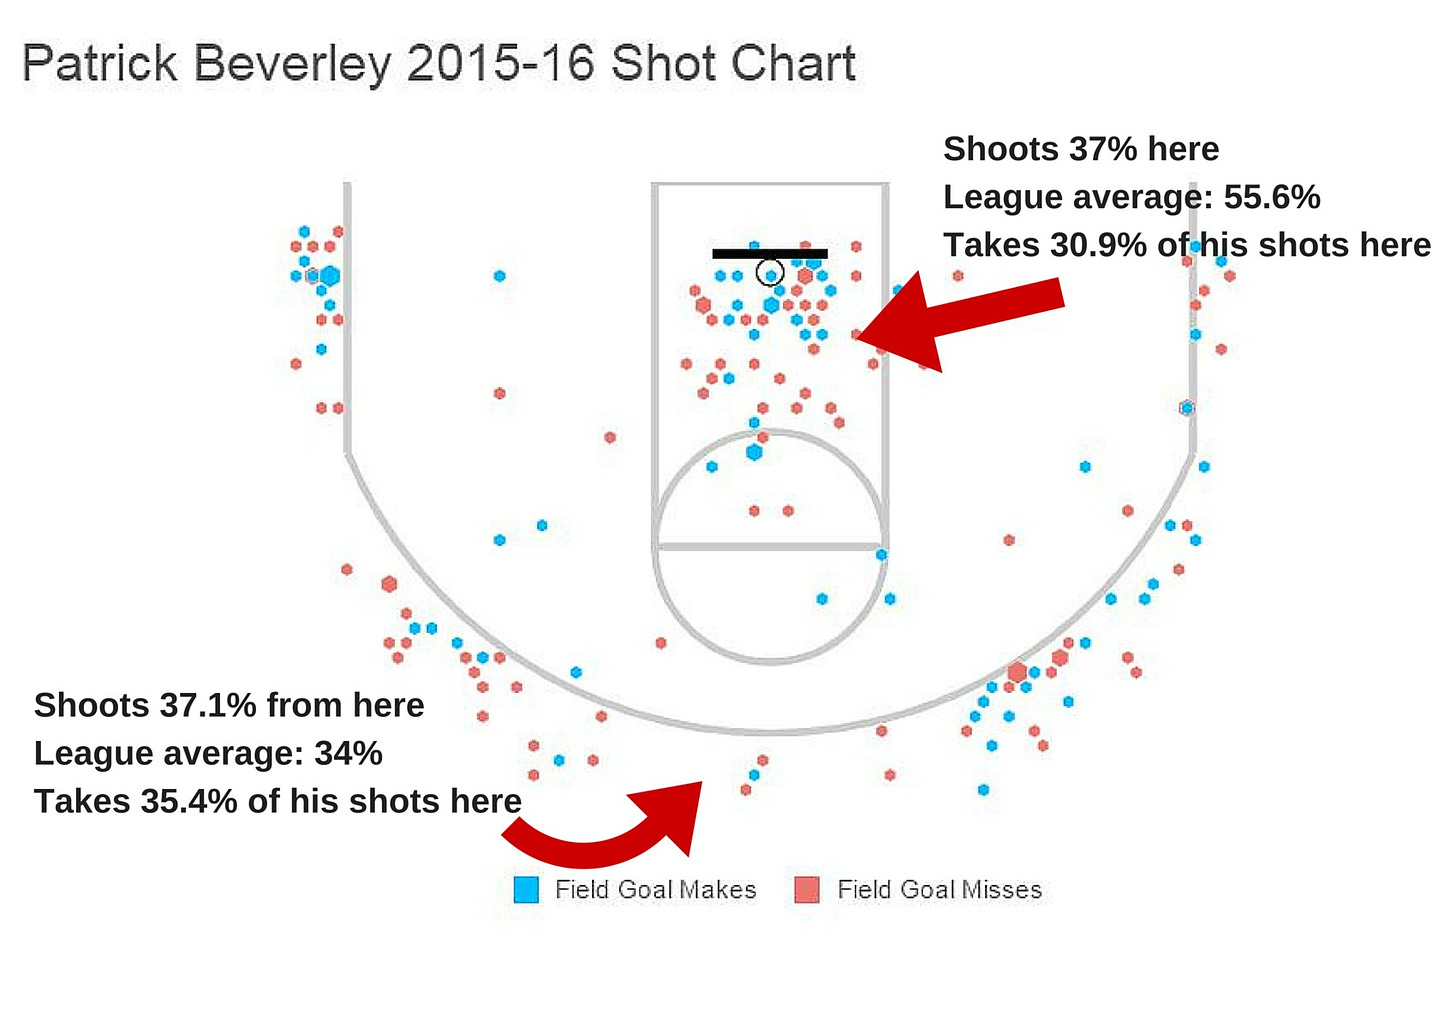 Bev shot chart